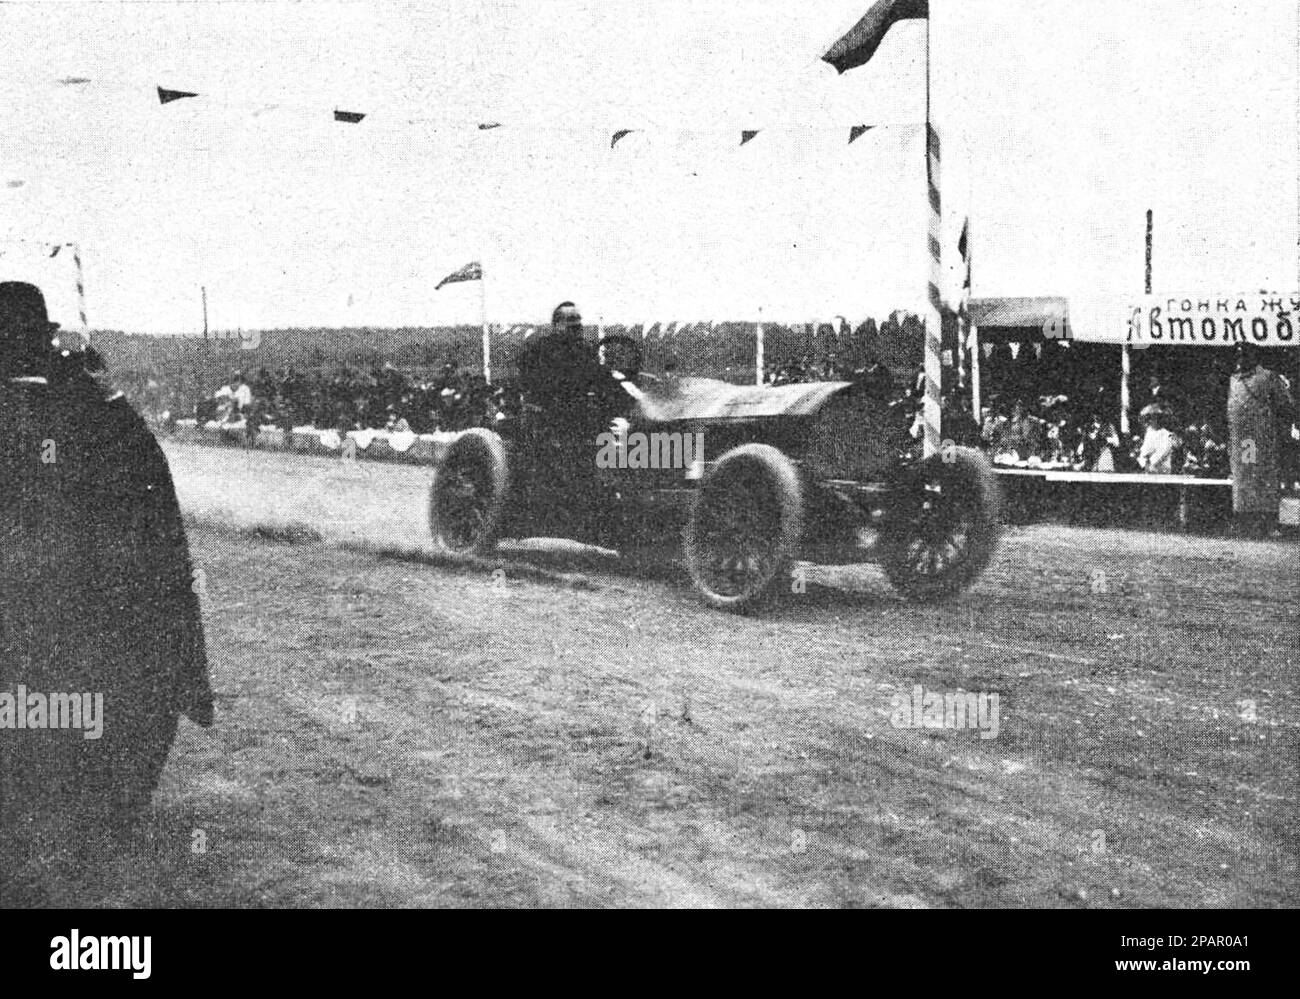 Gara automobilistica per un vero vicino a Mosca il 14 maggio 1910. L'autista Dio in una Mercedes finisce per primo. Foto dal 1910. Foto Stock